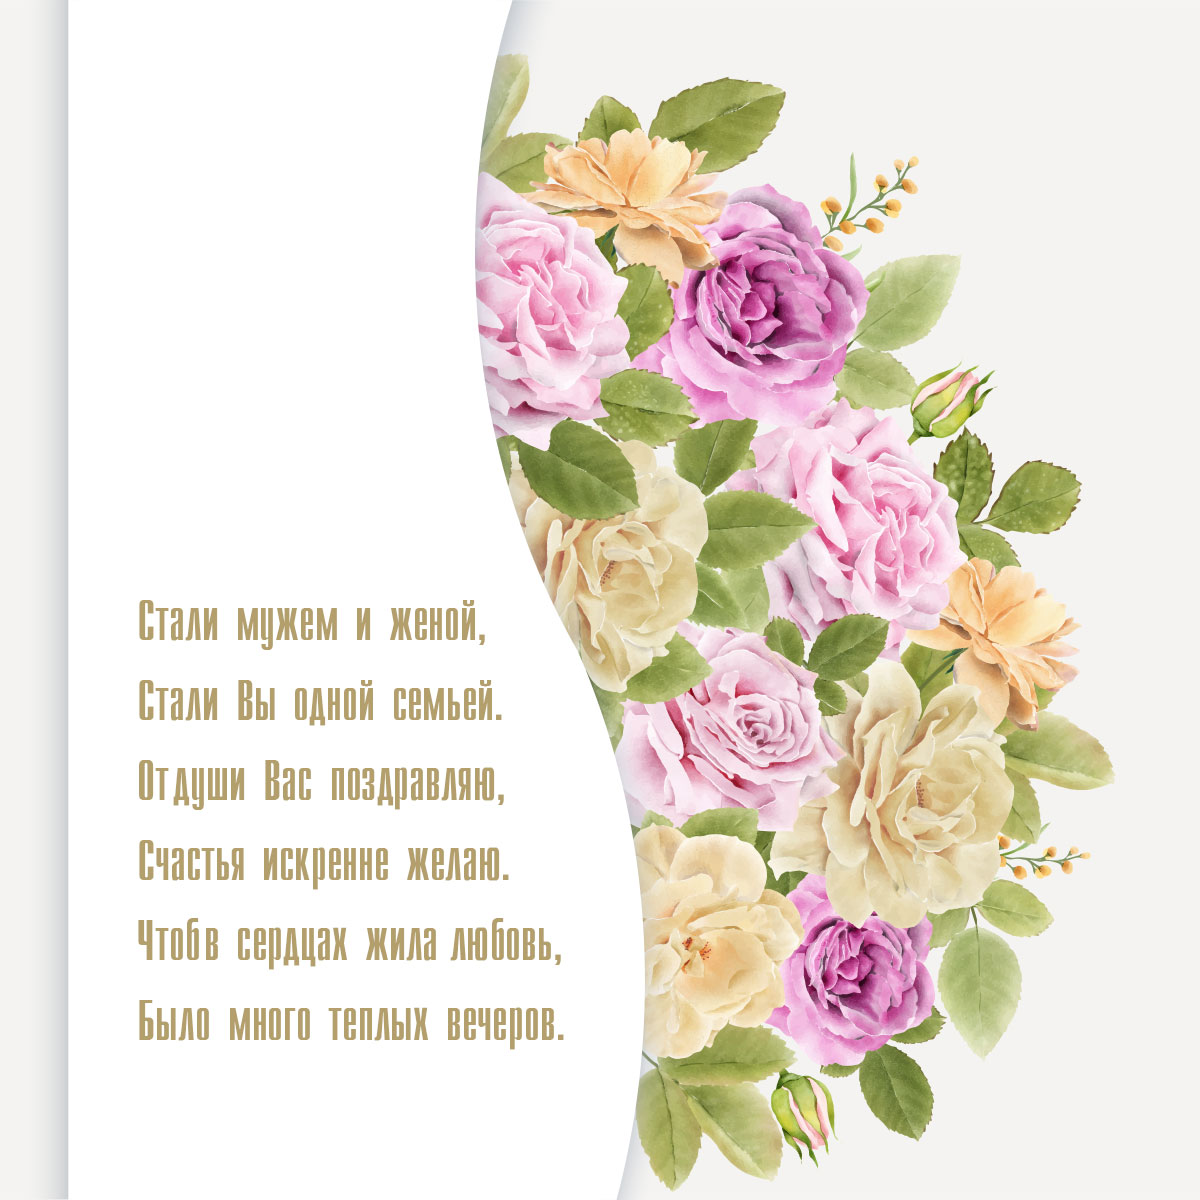 Картинка с садовыми розами и текстом пожелания с днем свадьбы.